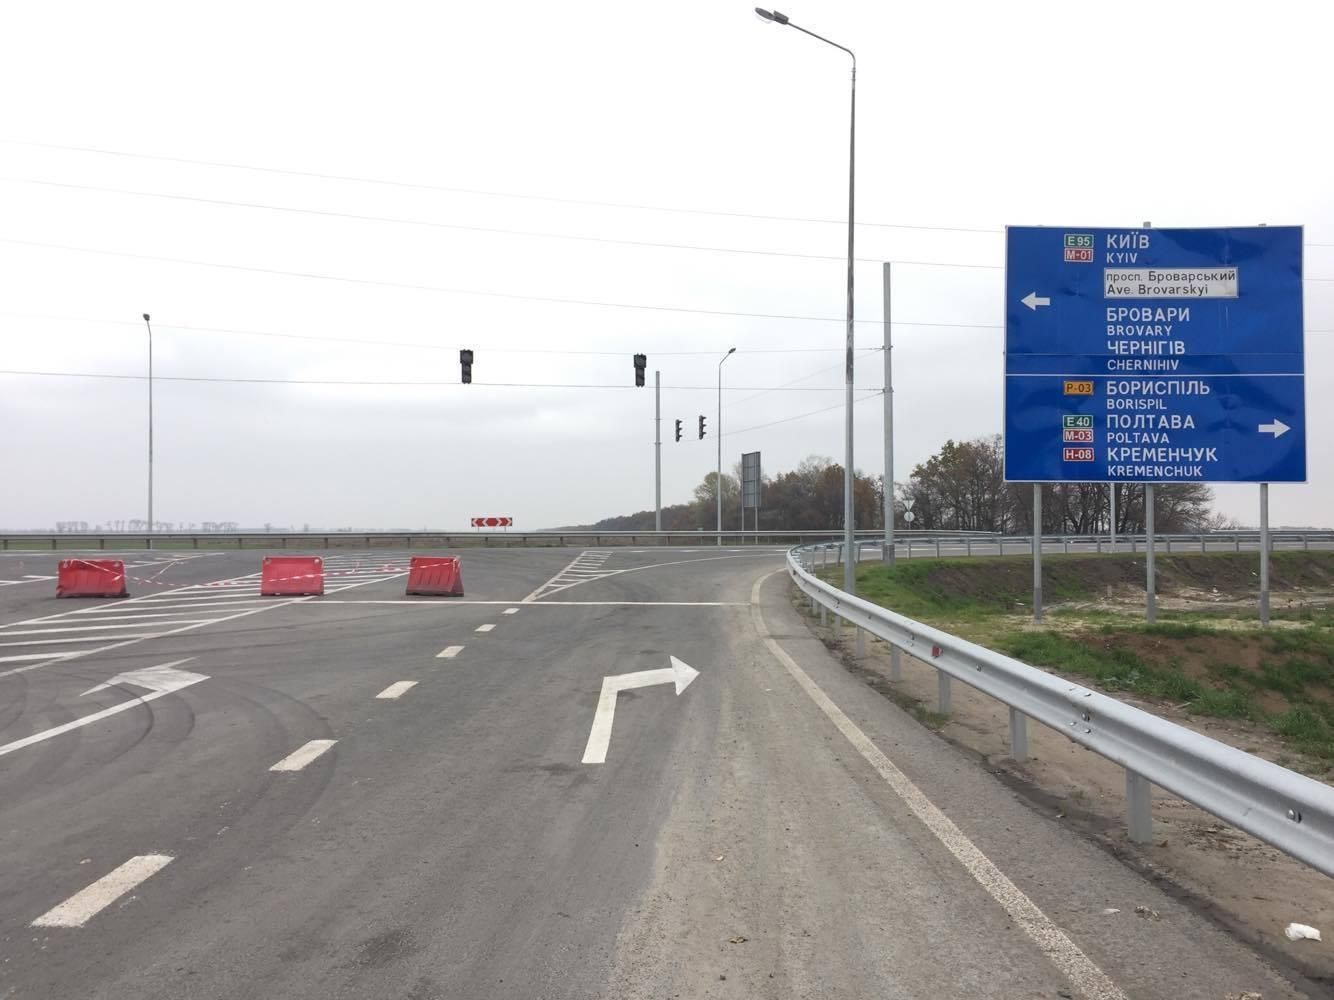 Ремонт дороги в Борисполе: движение ограничат до 20 августа 2021